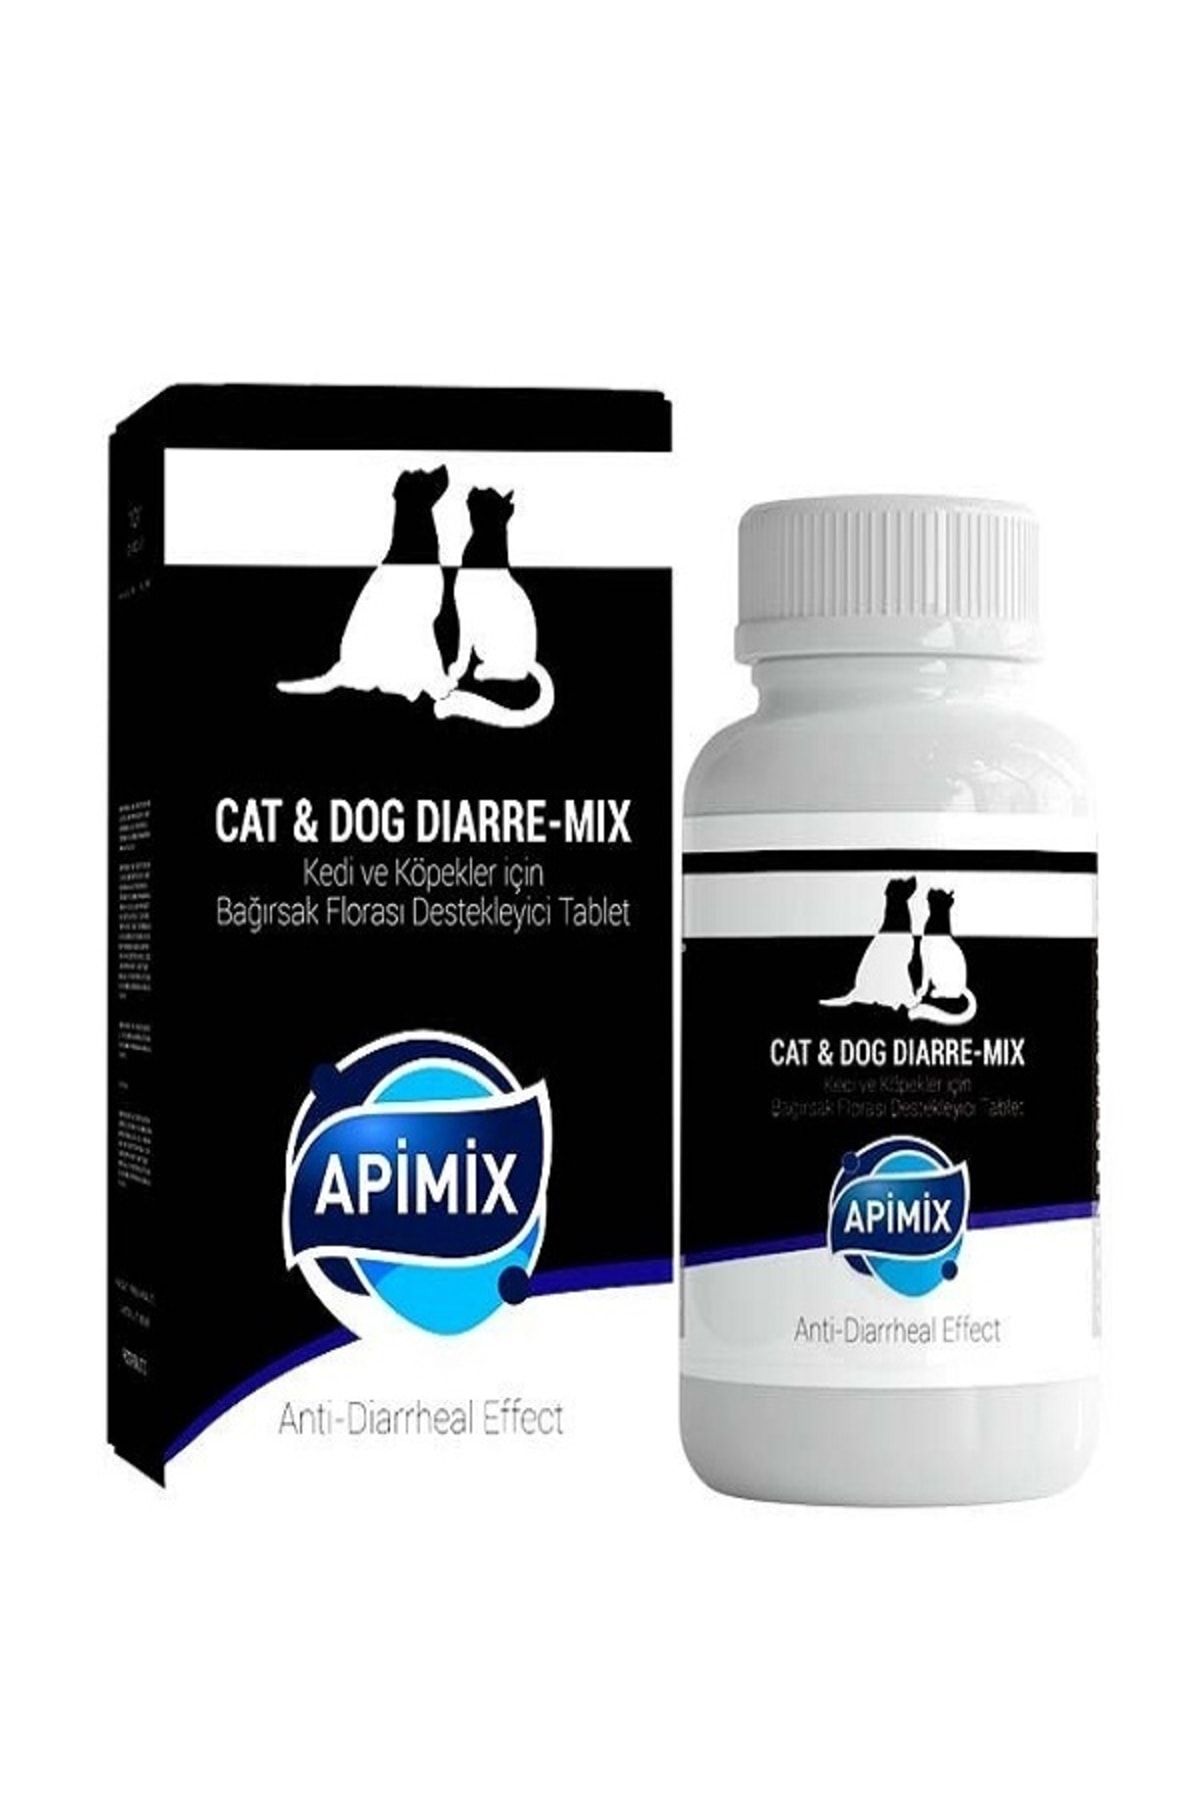 apimix Cat & Dog Dıarre-mıx (kedi-köpek Bağırsak Florası Destekleyici )